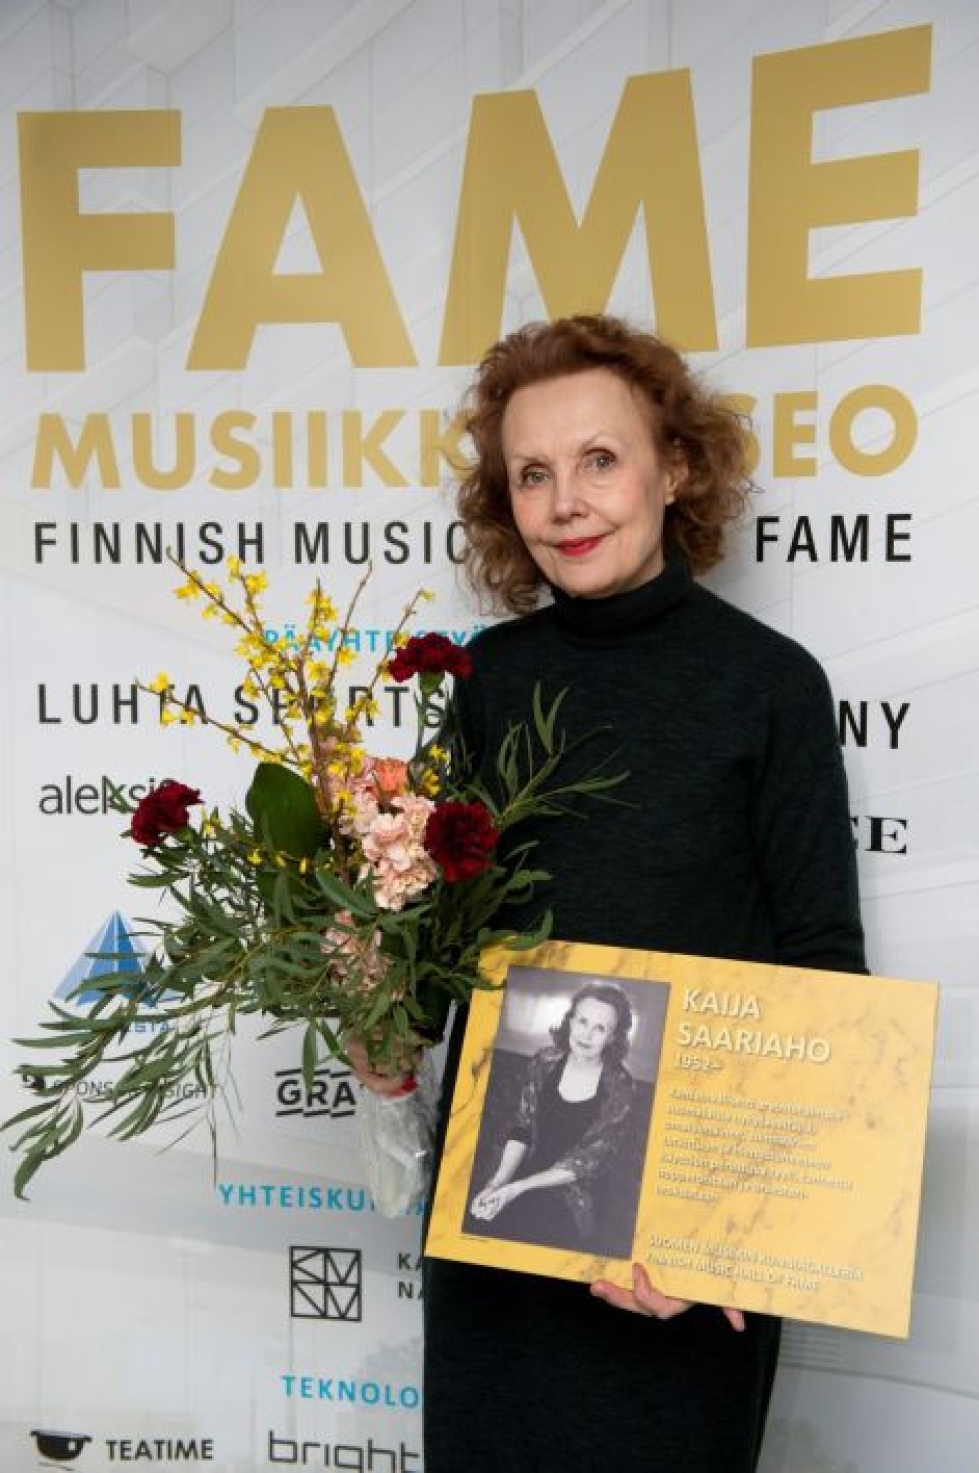 Nykysäveltäjä Kaija Saariaho otti vastaan Finnish Music Hall of Fame -kunniataulun Tampereella. LEHTIKUVA/HANDOUT/Minna Jalovaara